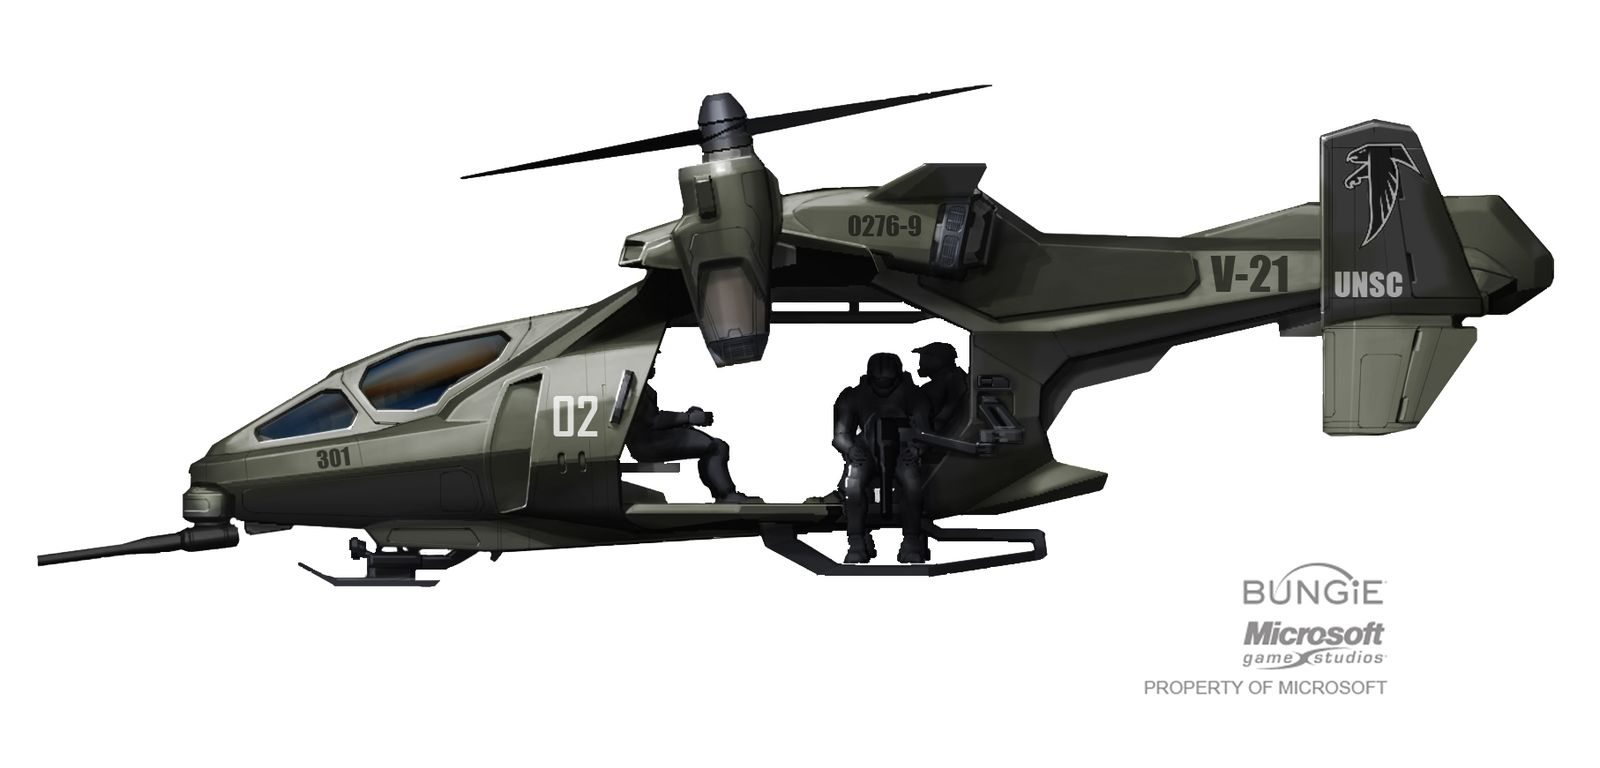 【PC游戏】HALO中的那些载具 —— UH-144猎鹰号通用直升机-第19张